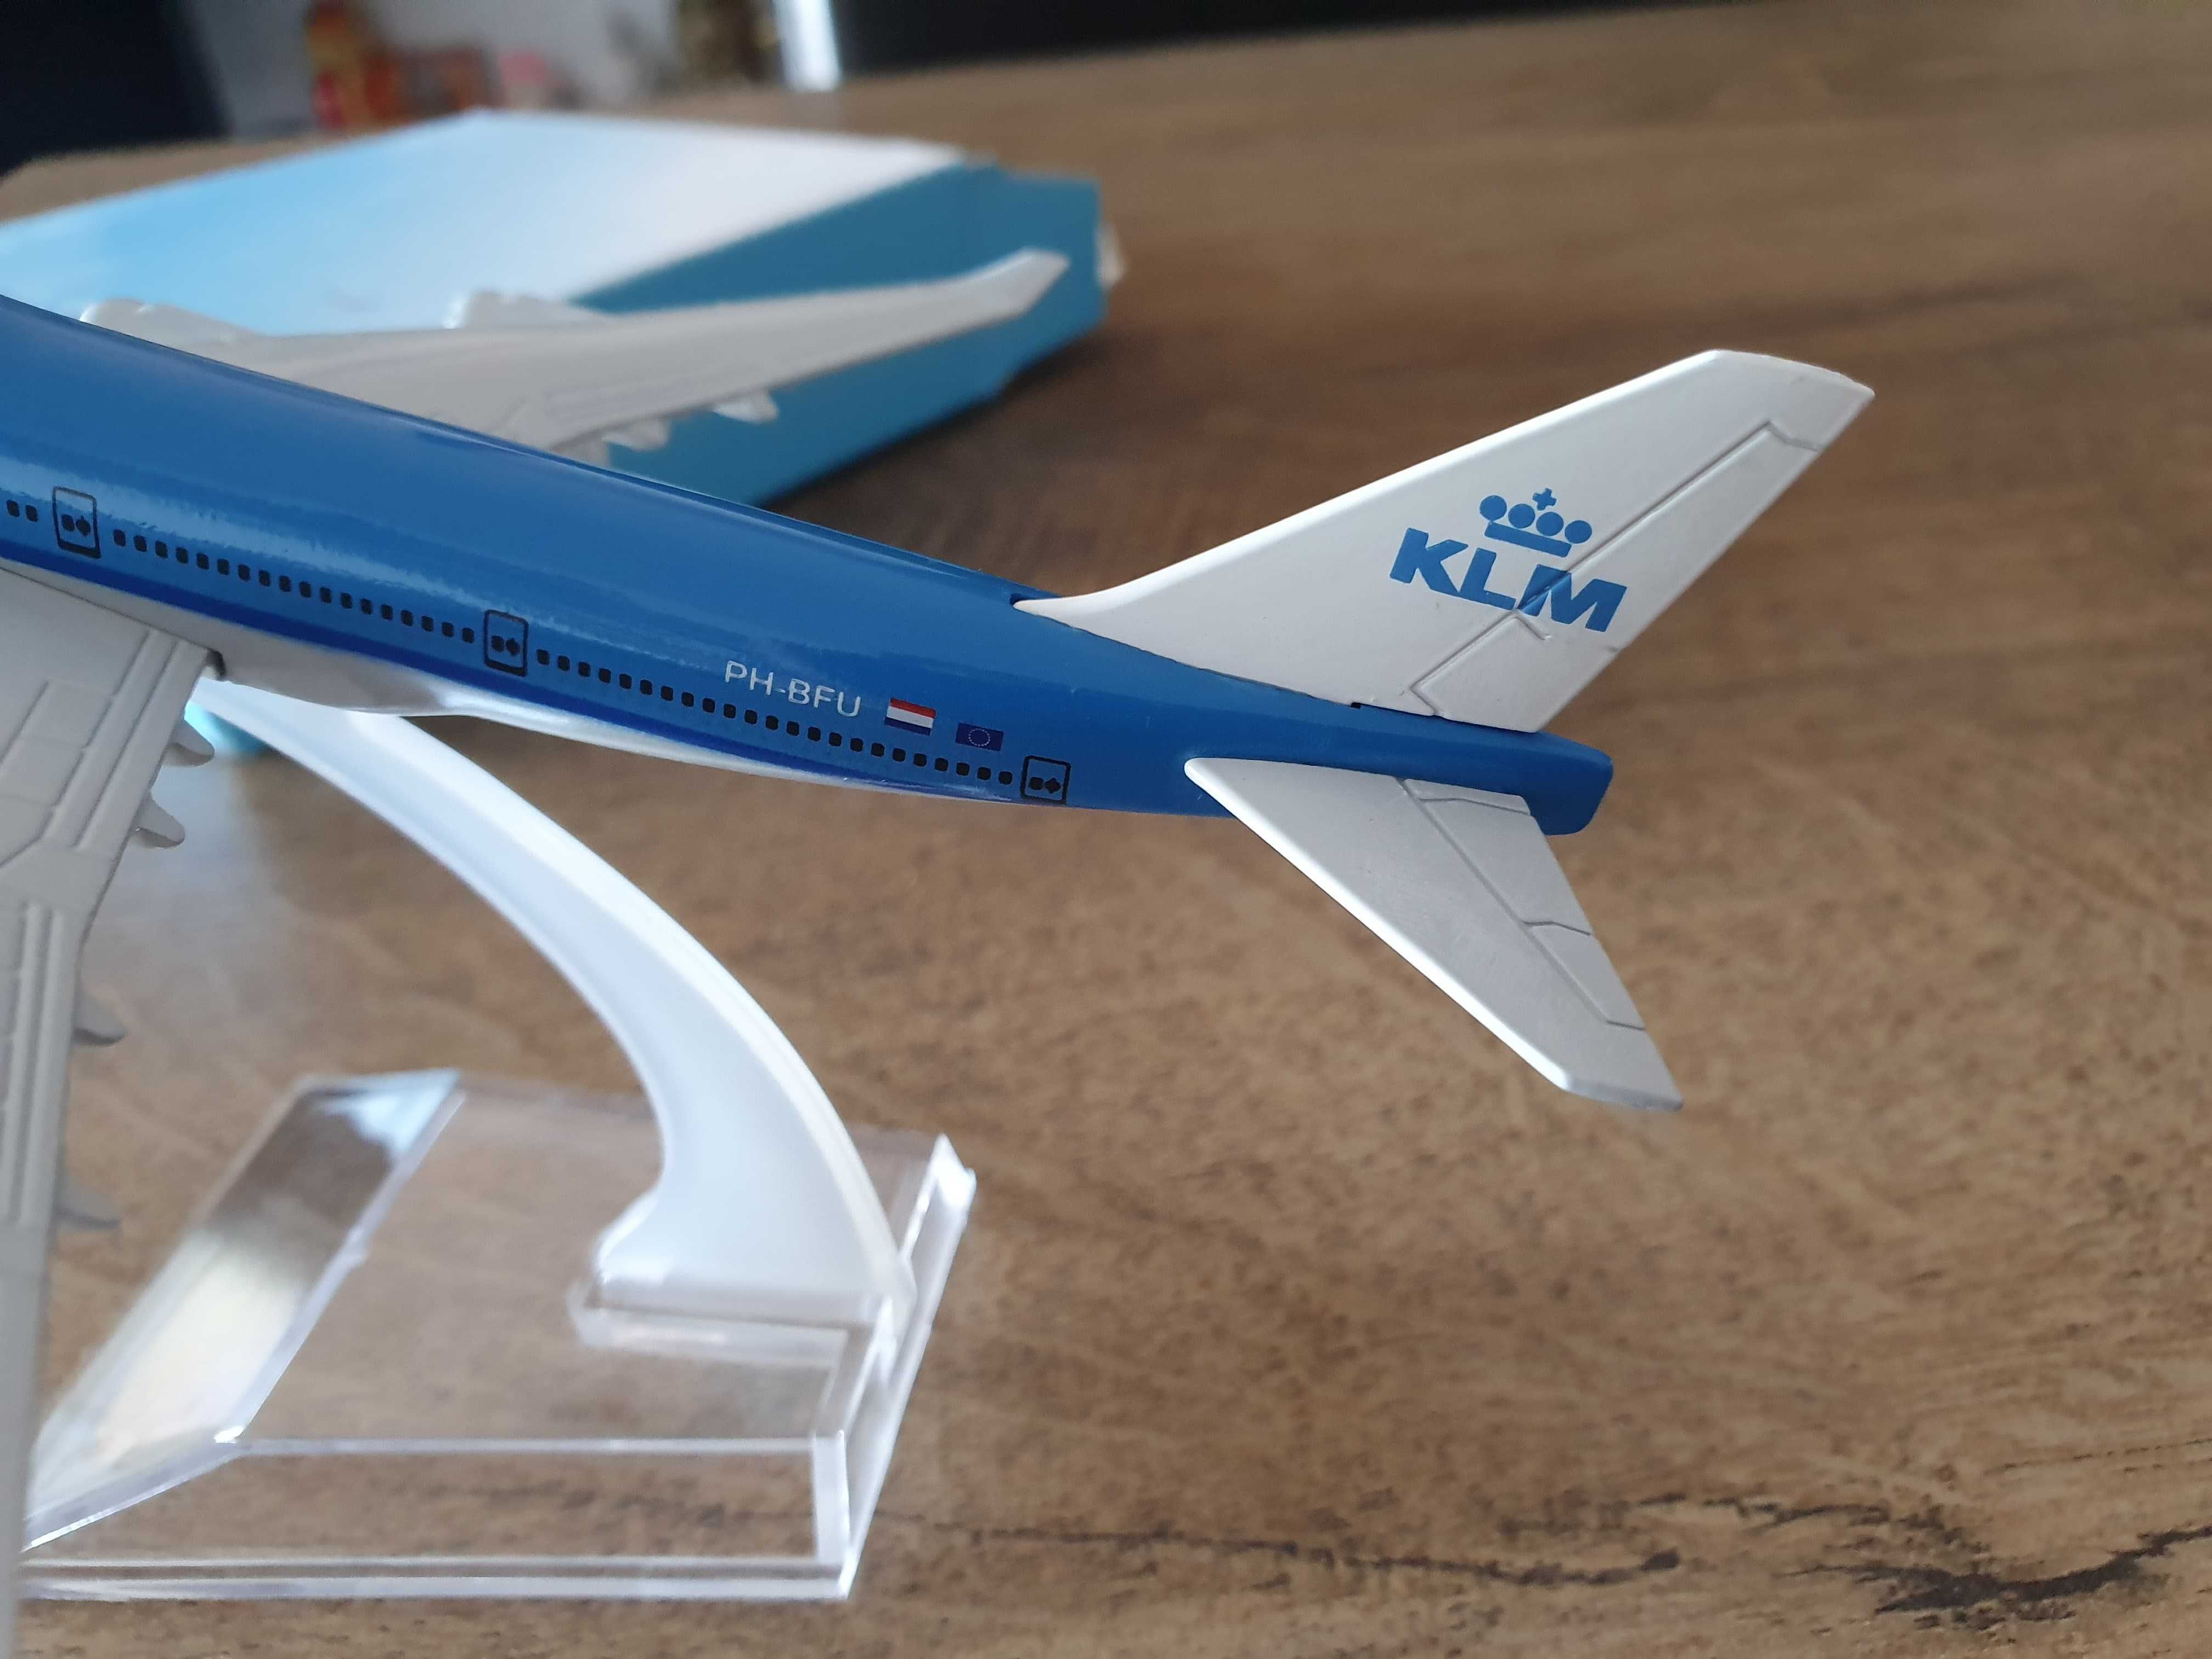 Macheta metalica de avion KLM | Decoratie | Perfect pt cadou